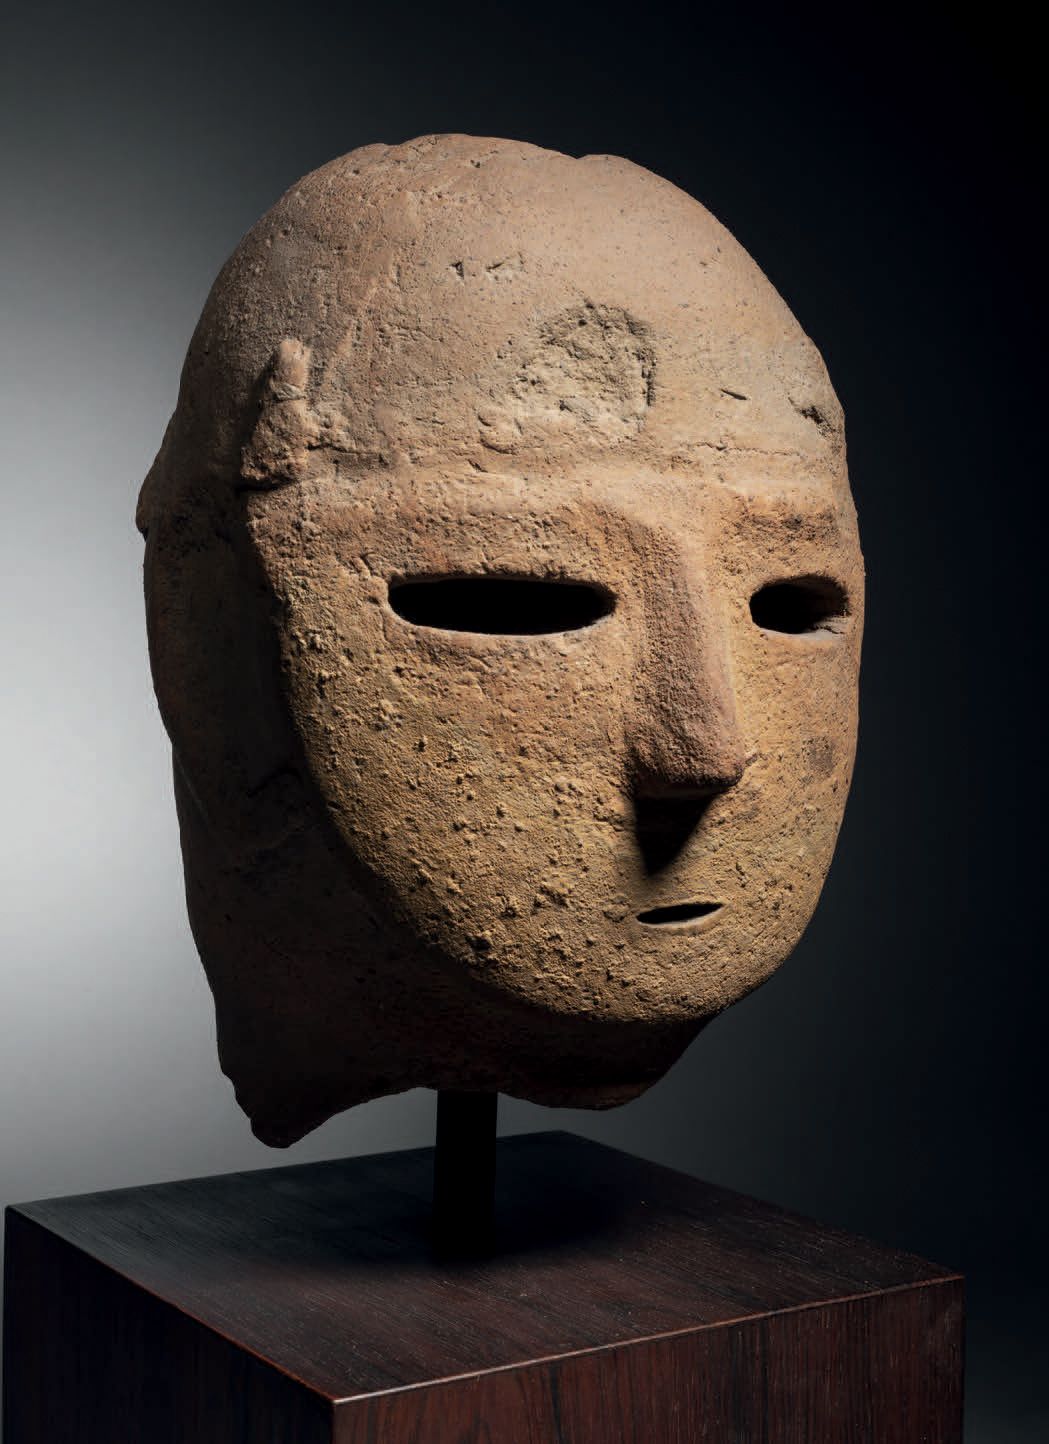 Null 哈尼瓦头像，日本，甲府时期，约5世纪，高21厘米。陶器
可能是代表一个战士，头部刻成椭圆形，鼻子短而直，眼睛大，有穿孔，呈水平状，嘴小，也有穿孔。

&hellip;